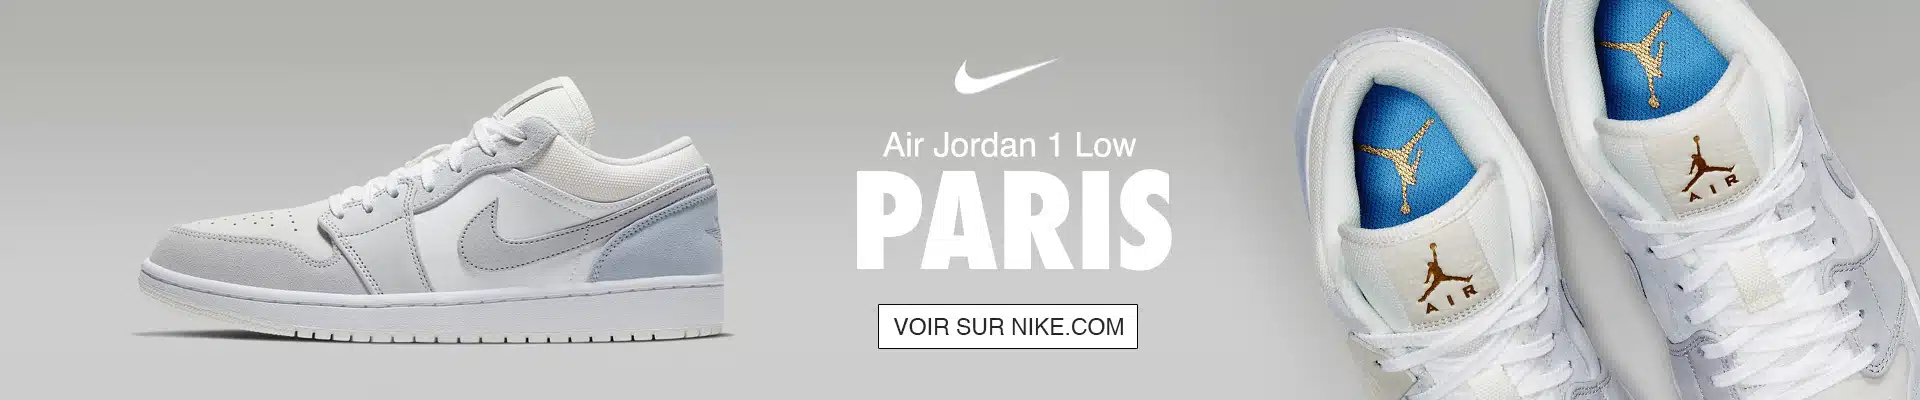 Air Jordan 1 Low Paris